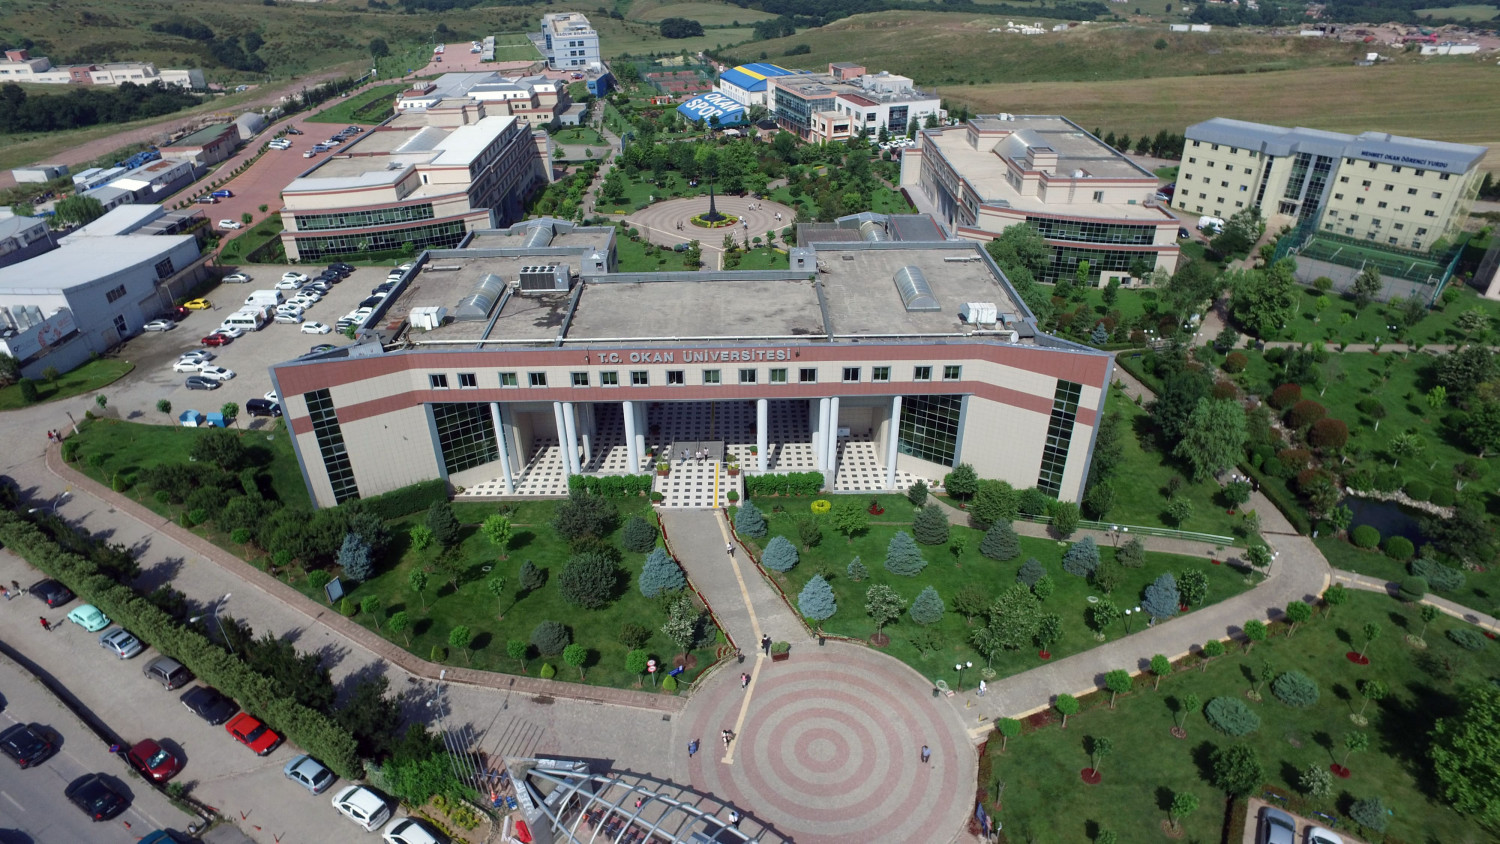 İstanbul Okan دانشگاه